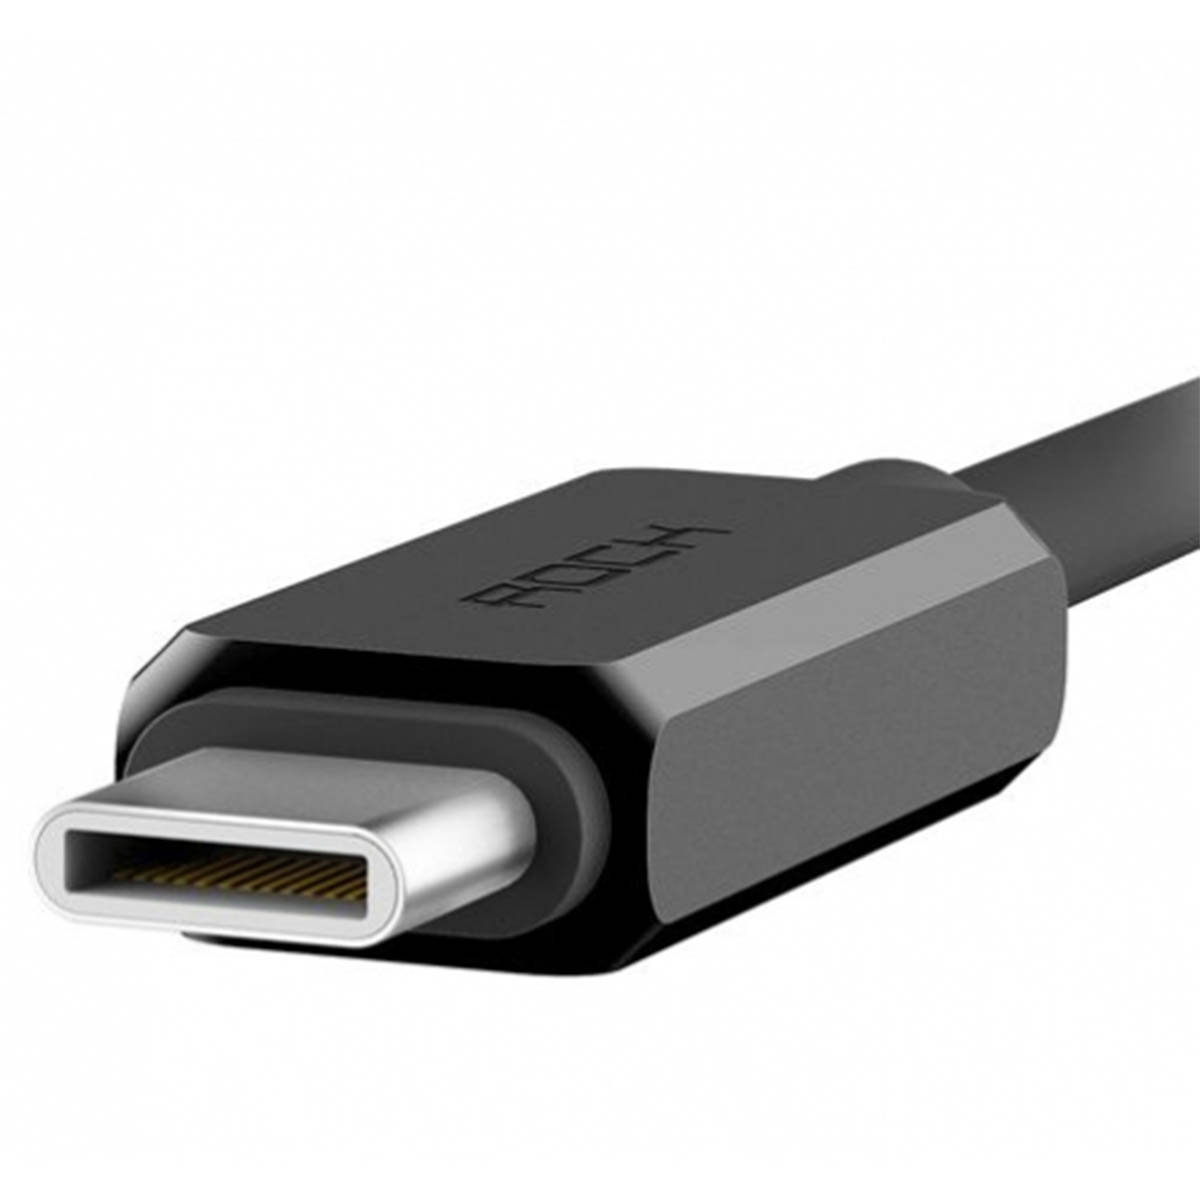 Кабель ROCK USB Type C на APPLE Lightning 8 pin, длина 1 метр, цвет черный